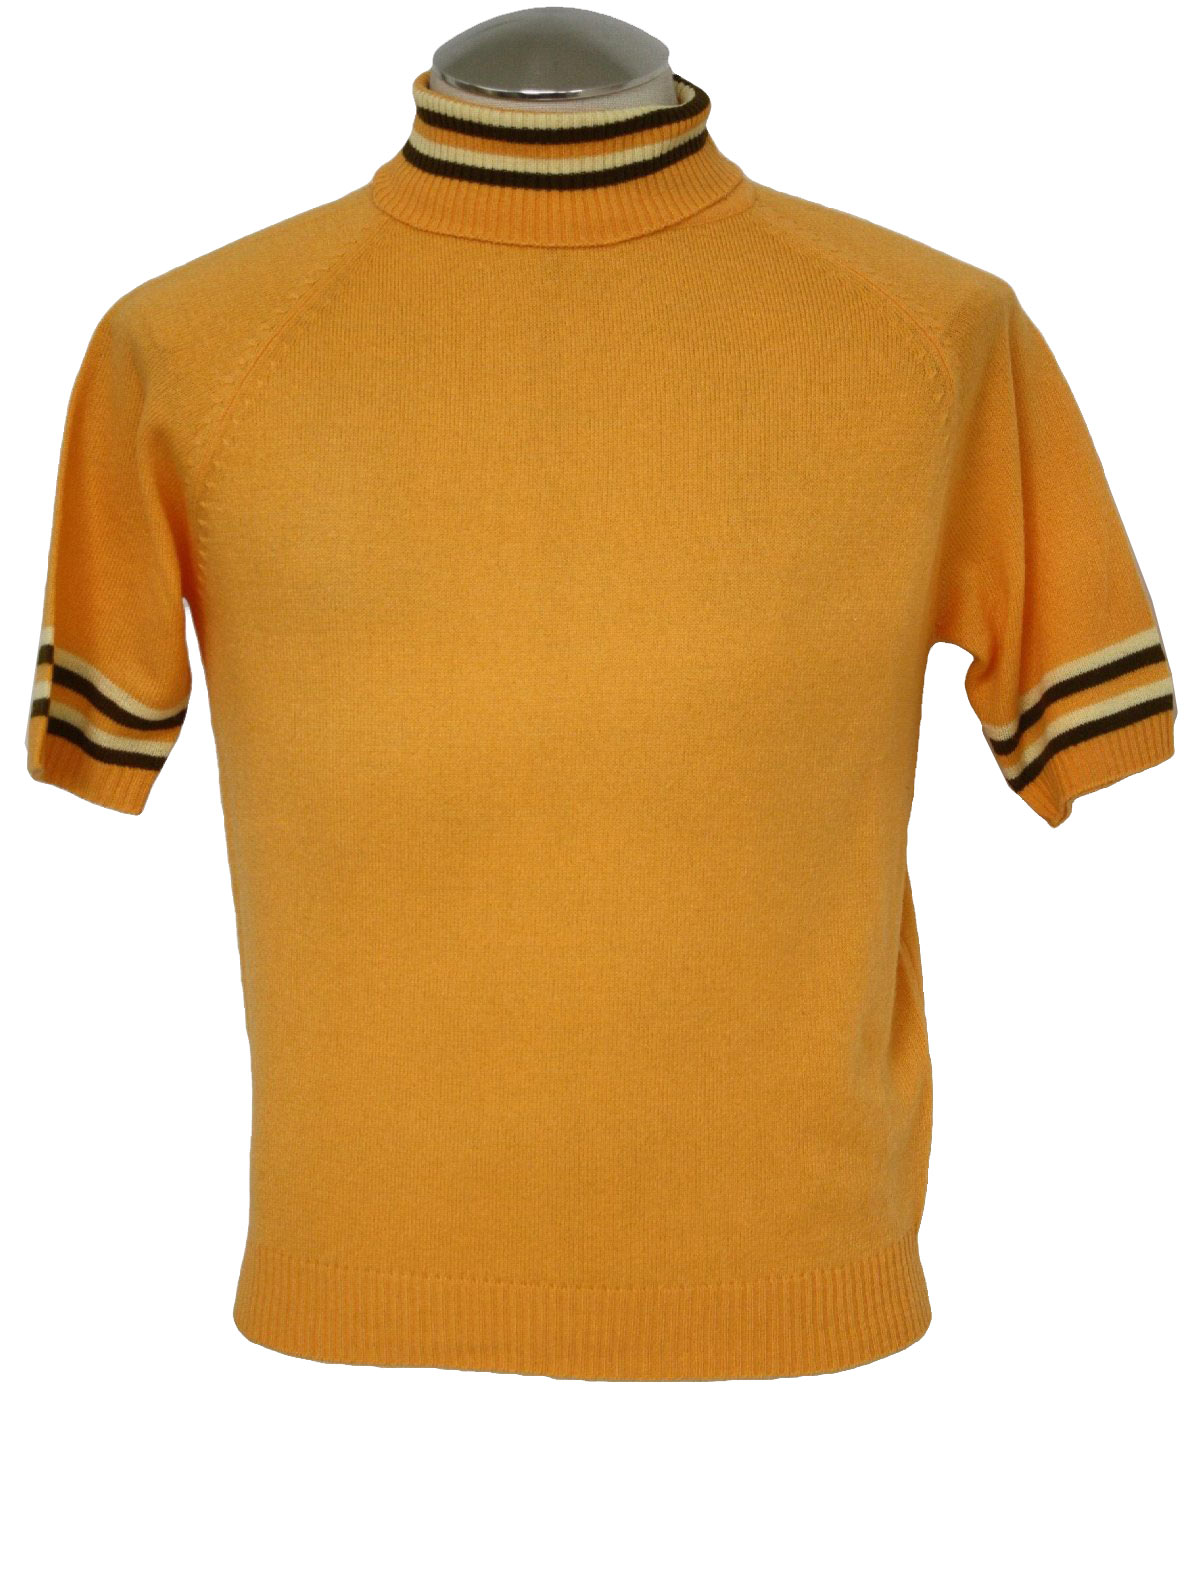 Vintage Short Sleeve High Neck Shirt Men's Small 70s Mod Brown Mockneck Top